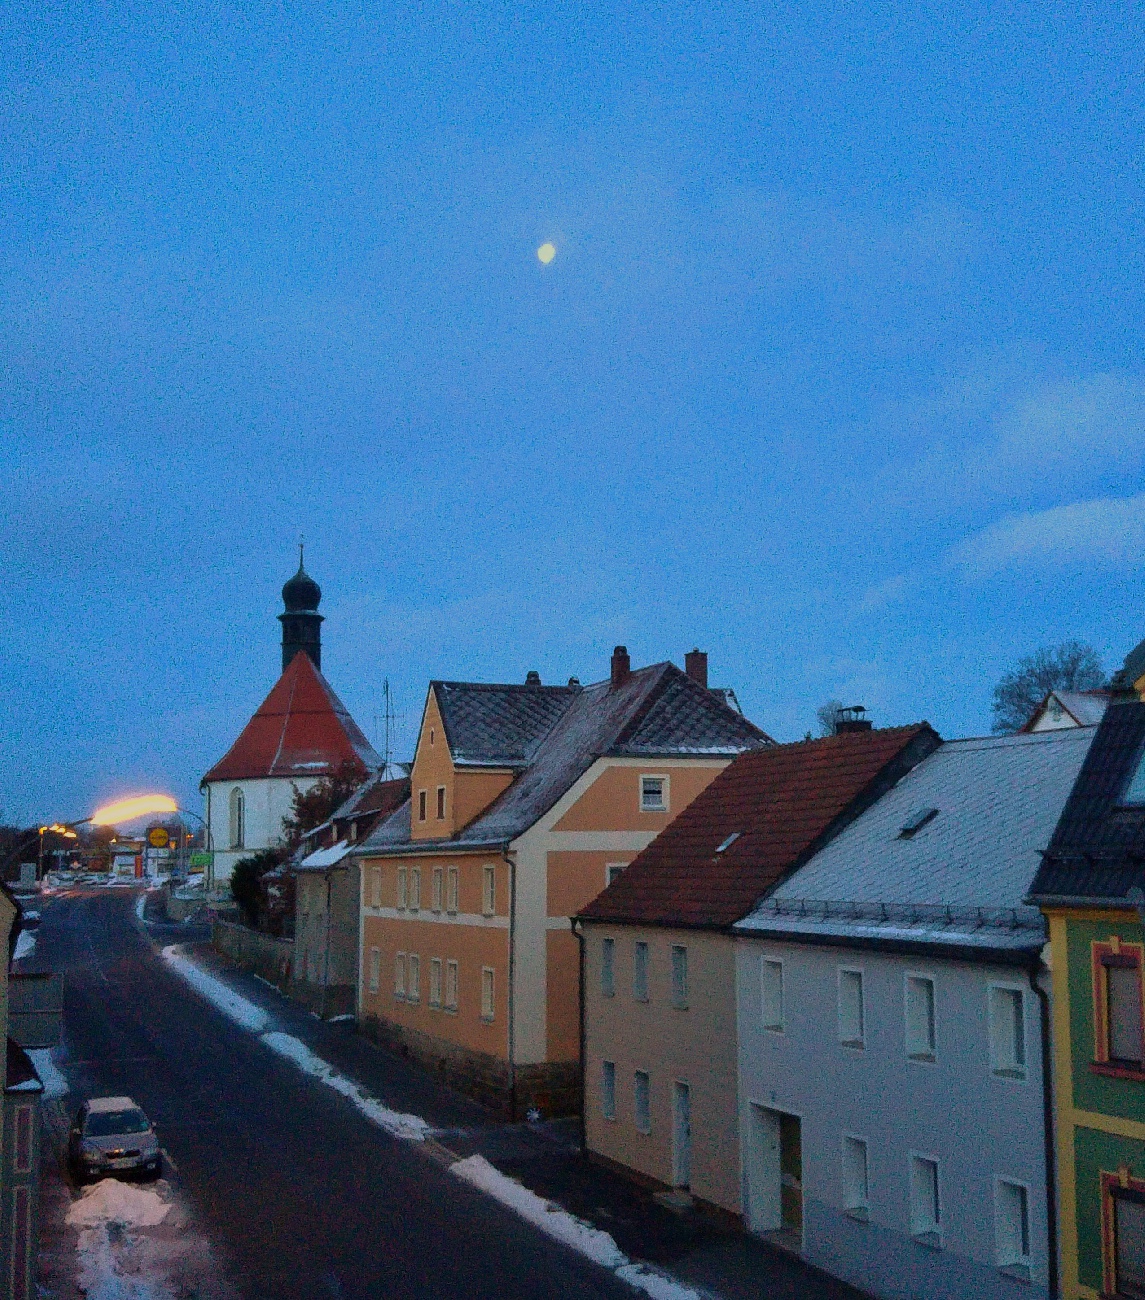 Foto: Jennifer Müller - Ein wunderschöner Sonntag Morgen mit blauem Himmel und Mond. 31.01.2021 